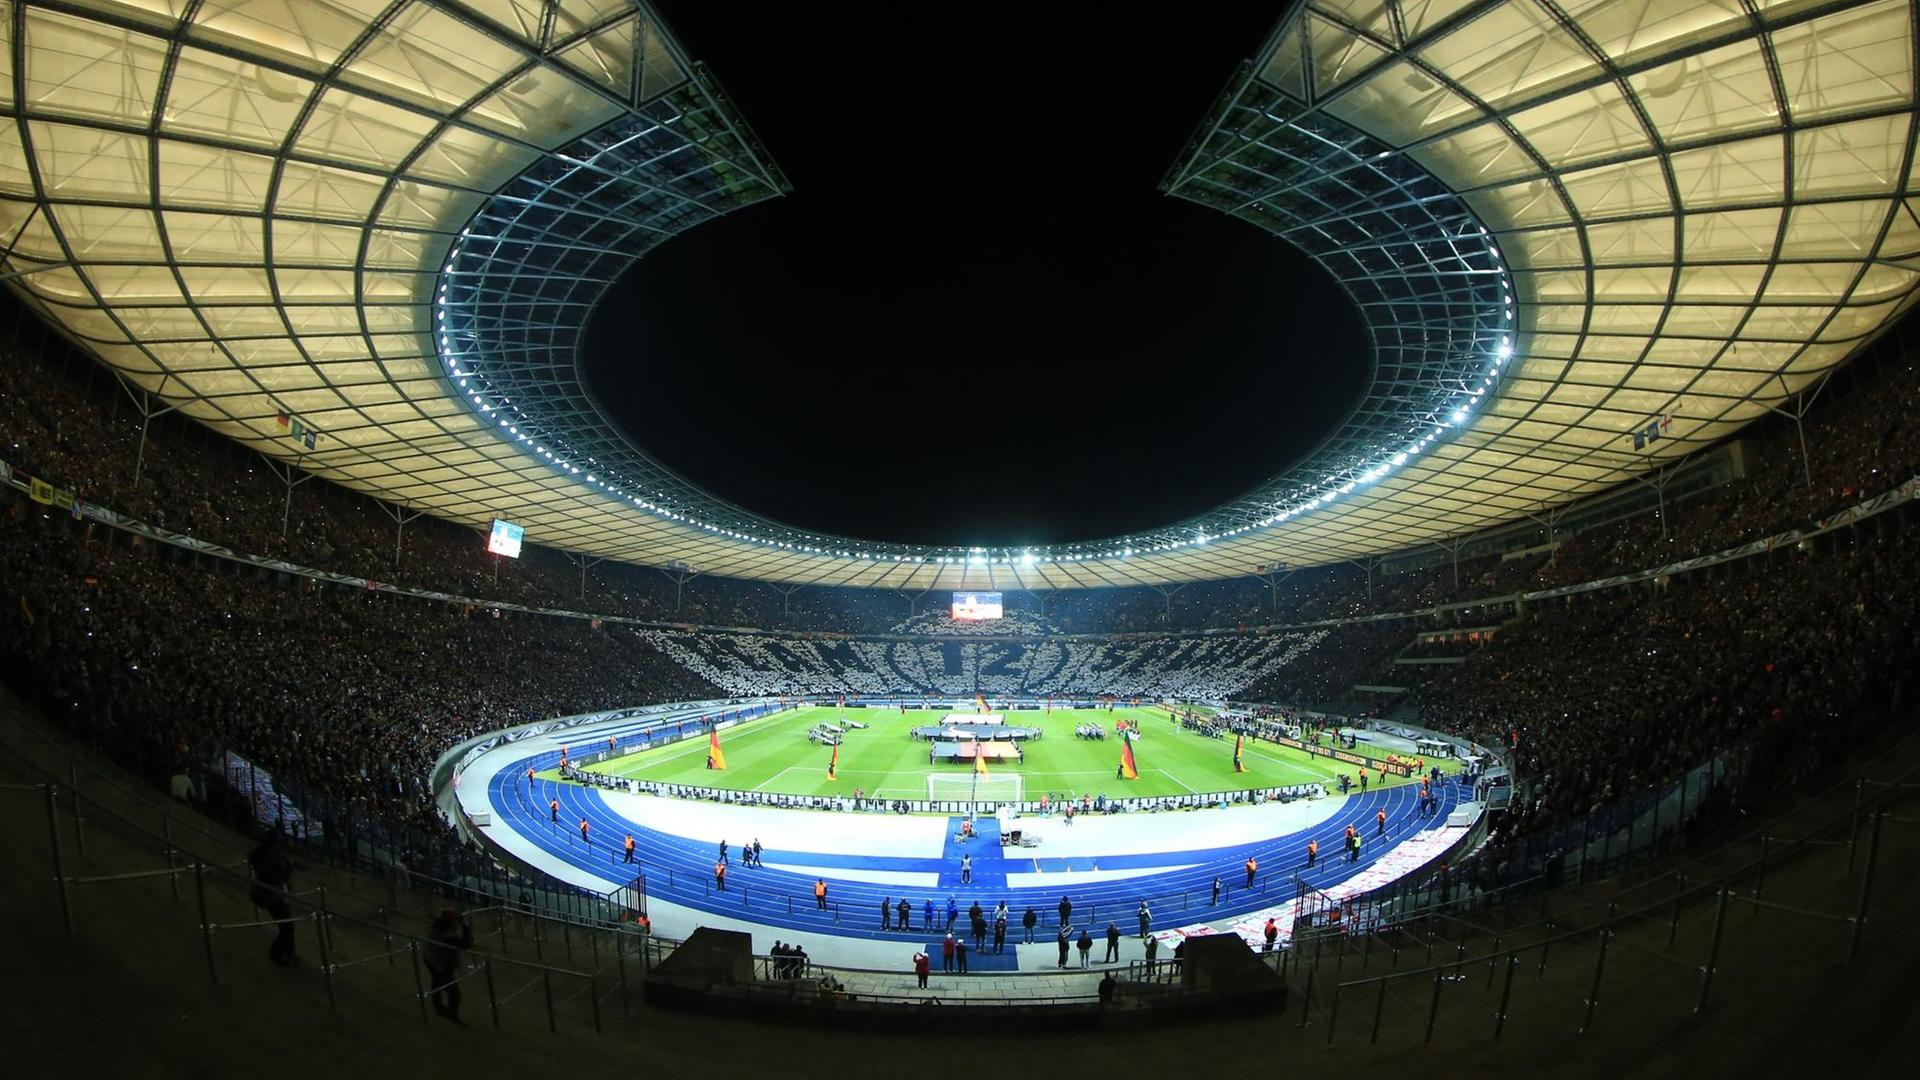 Das Olympiastadion in Berlin am Abend des Länderspiels Deutschland - England.